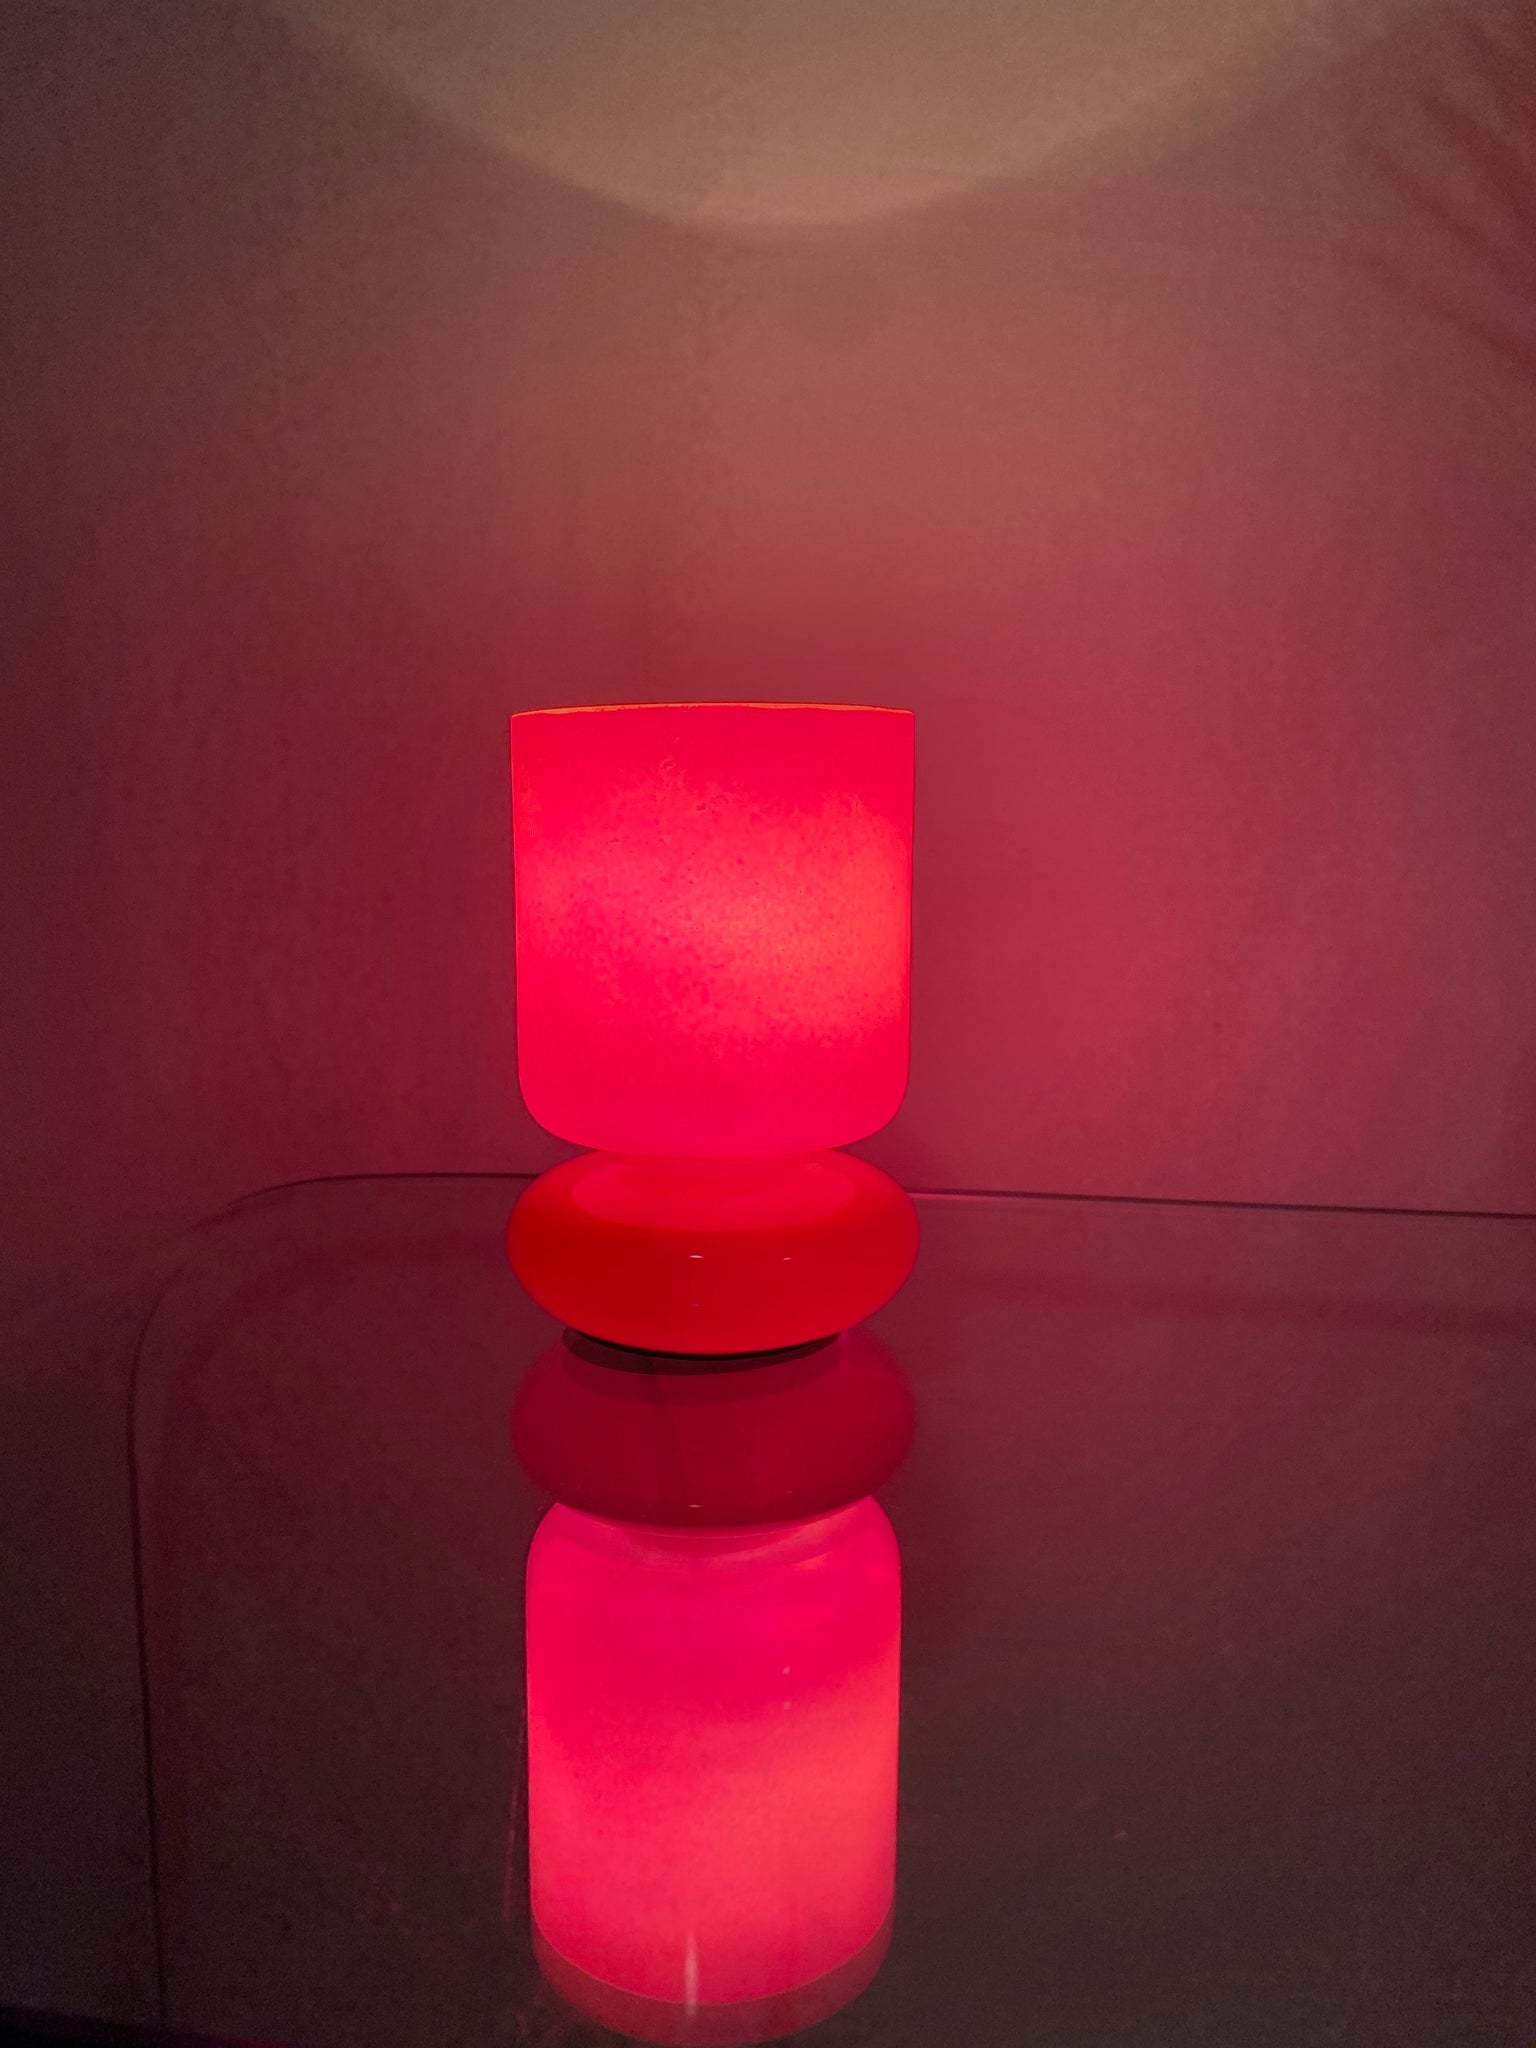 Mini pink IKEA Lykta style lamp